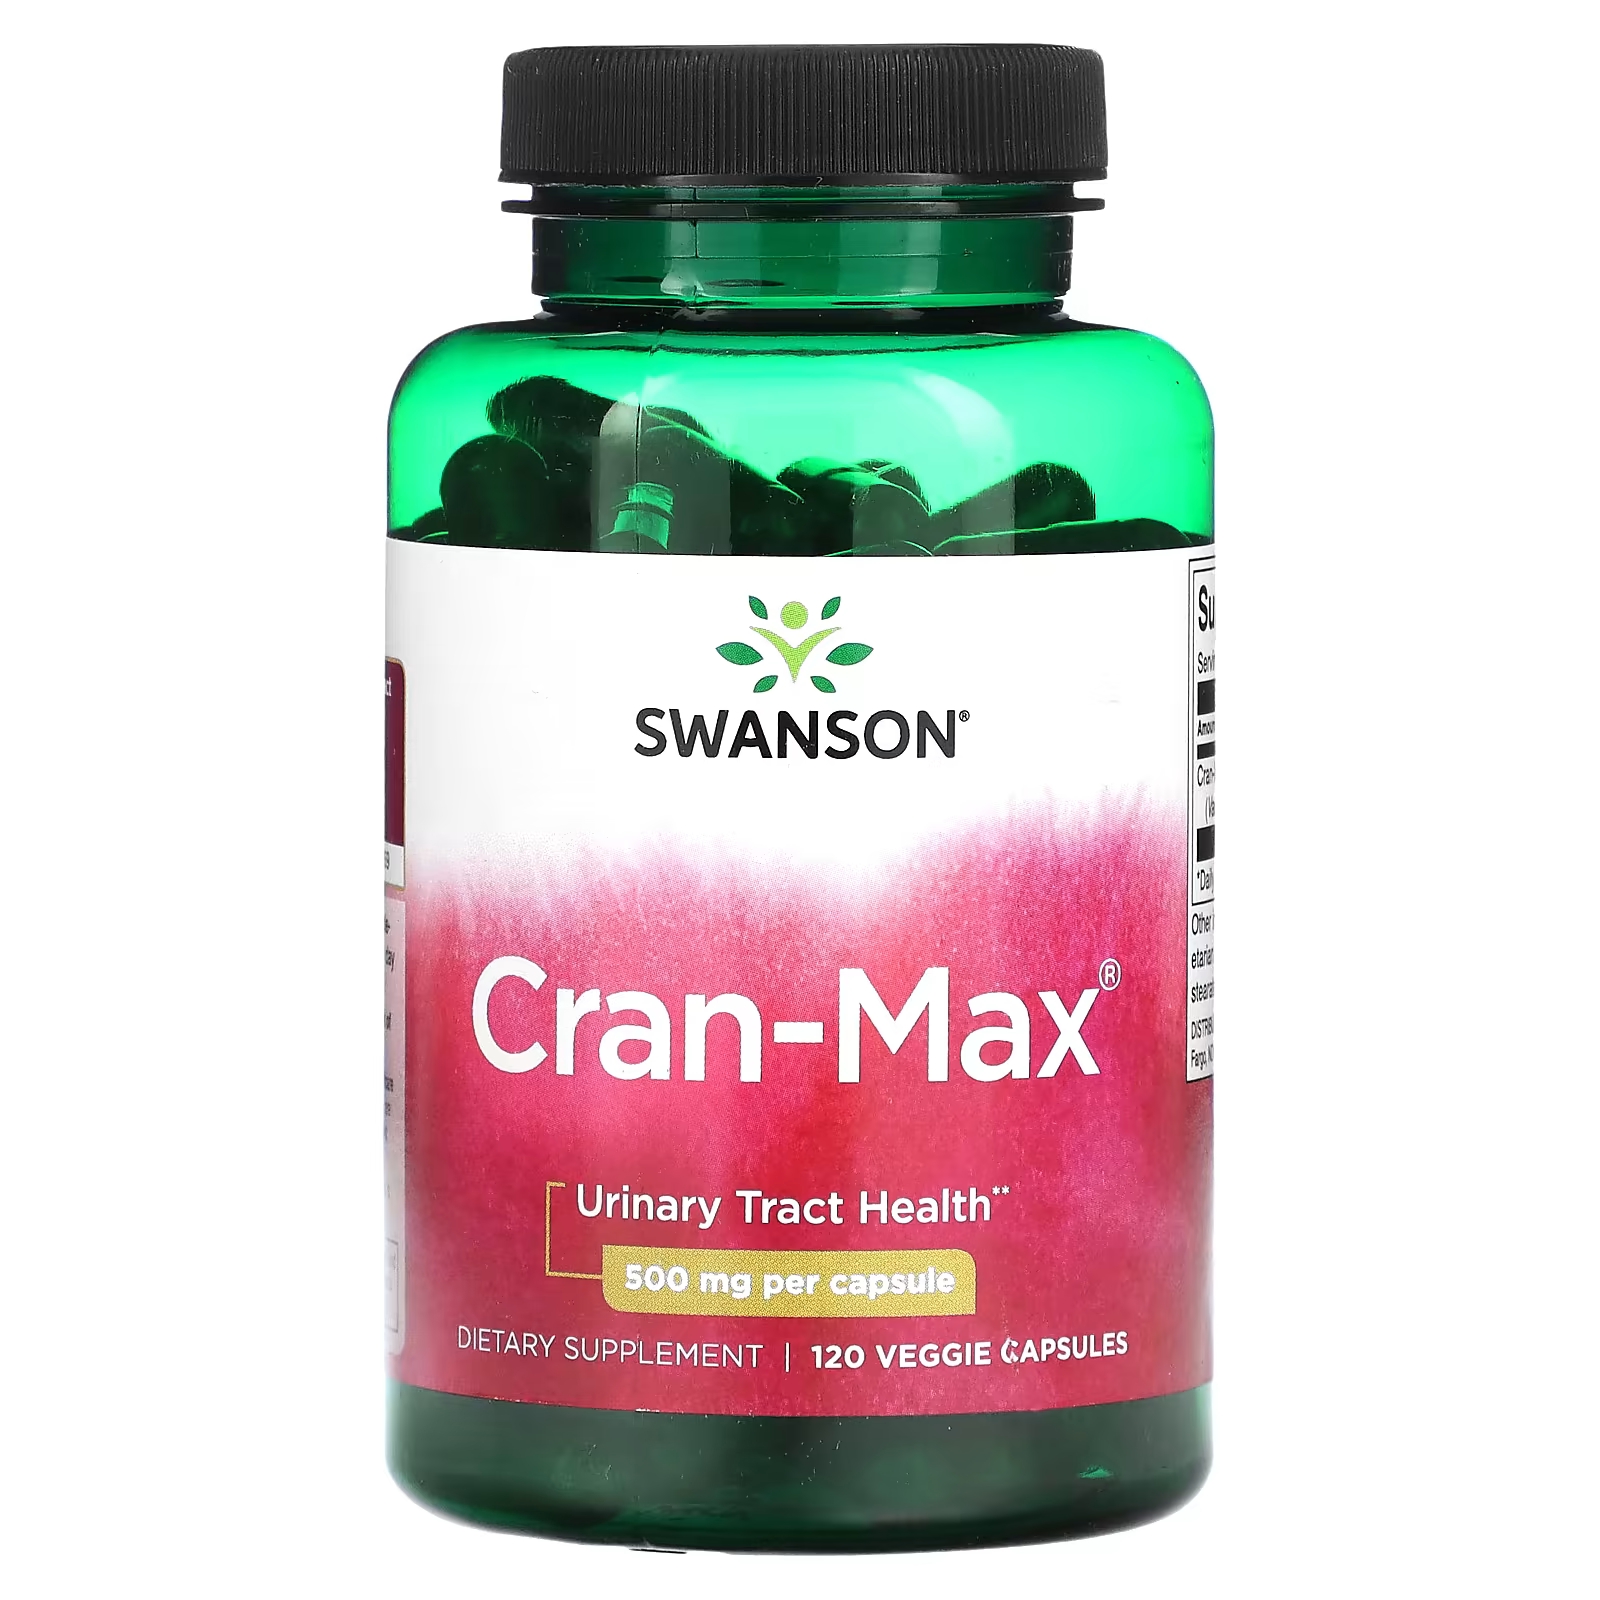 Пищевая добавка Swanson Cran-Max, 500 мг, 120 растительных капсул бад нефробест для мочевыводящих путей и почек 60 капсул